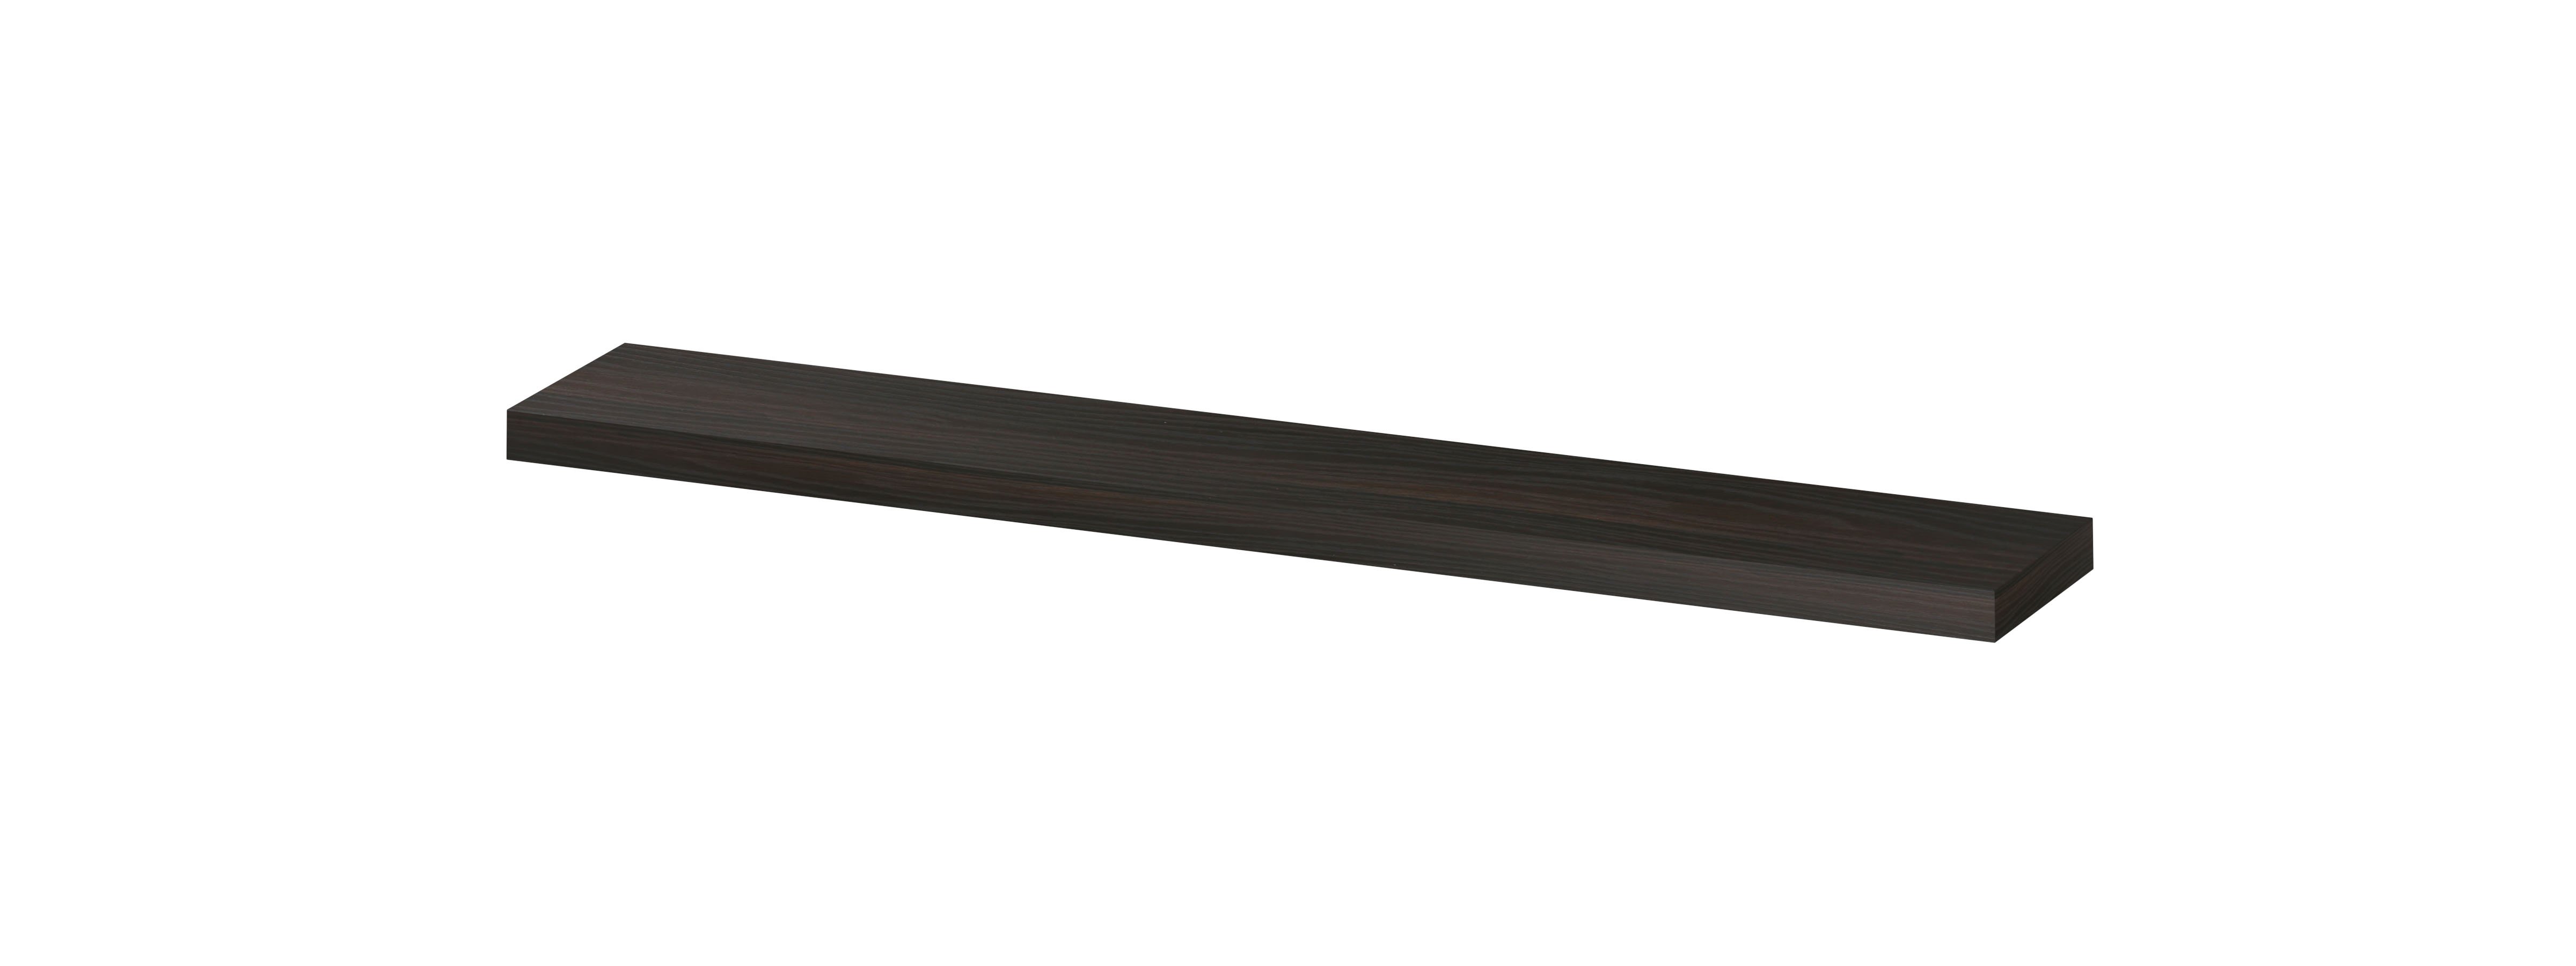 INK® wandplank in houtdecor 3,5cm dik variabele maat voor vrije ophanging inclusief blinde bevestiging 60-120x20x3,5cm, intens eiken